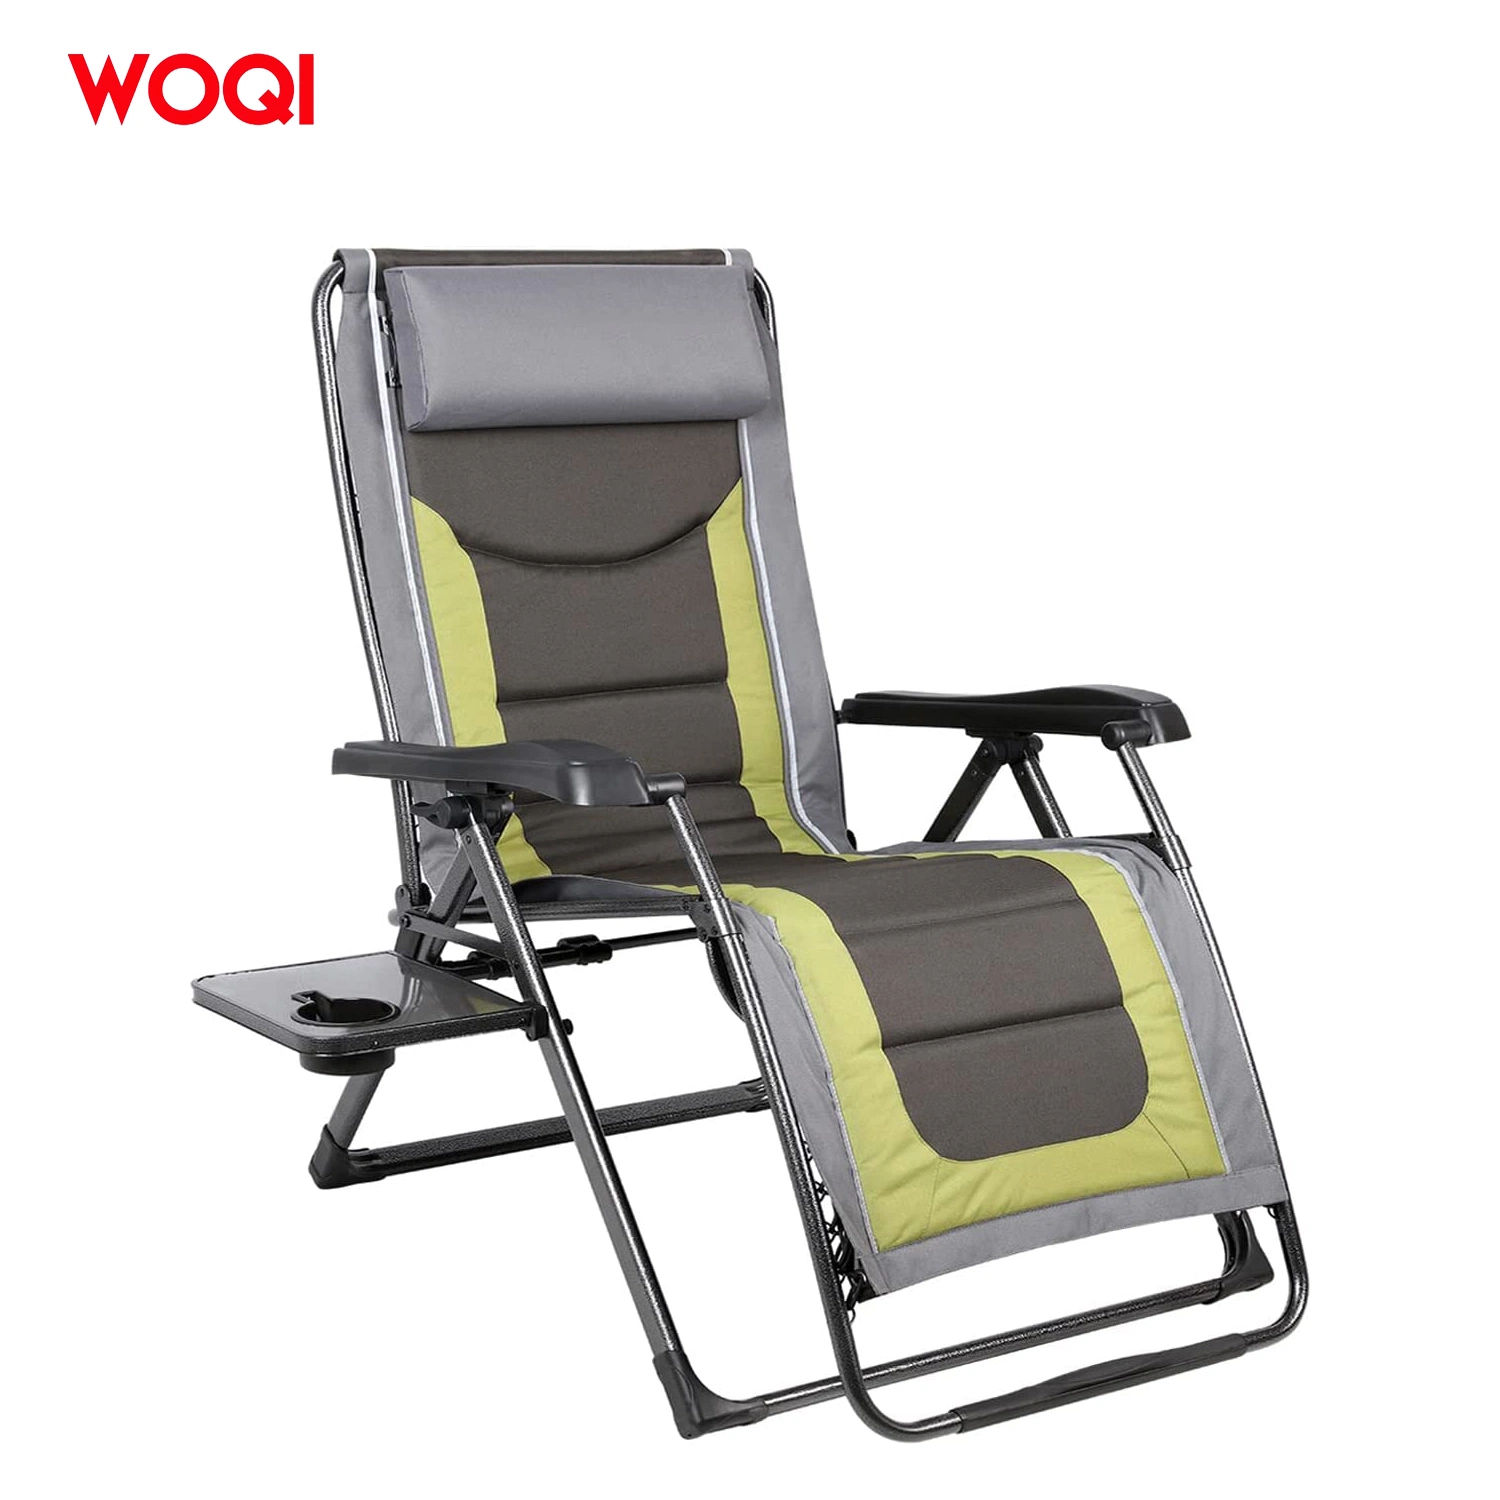 Cadeira dobrável Woqi e Cama Individual para mobiliário Exterior Geral Utilize